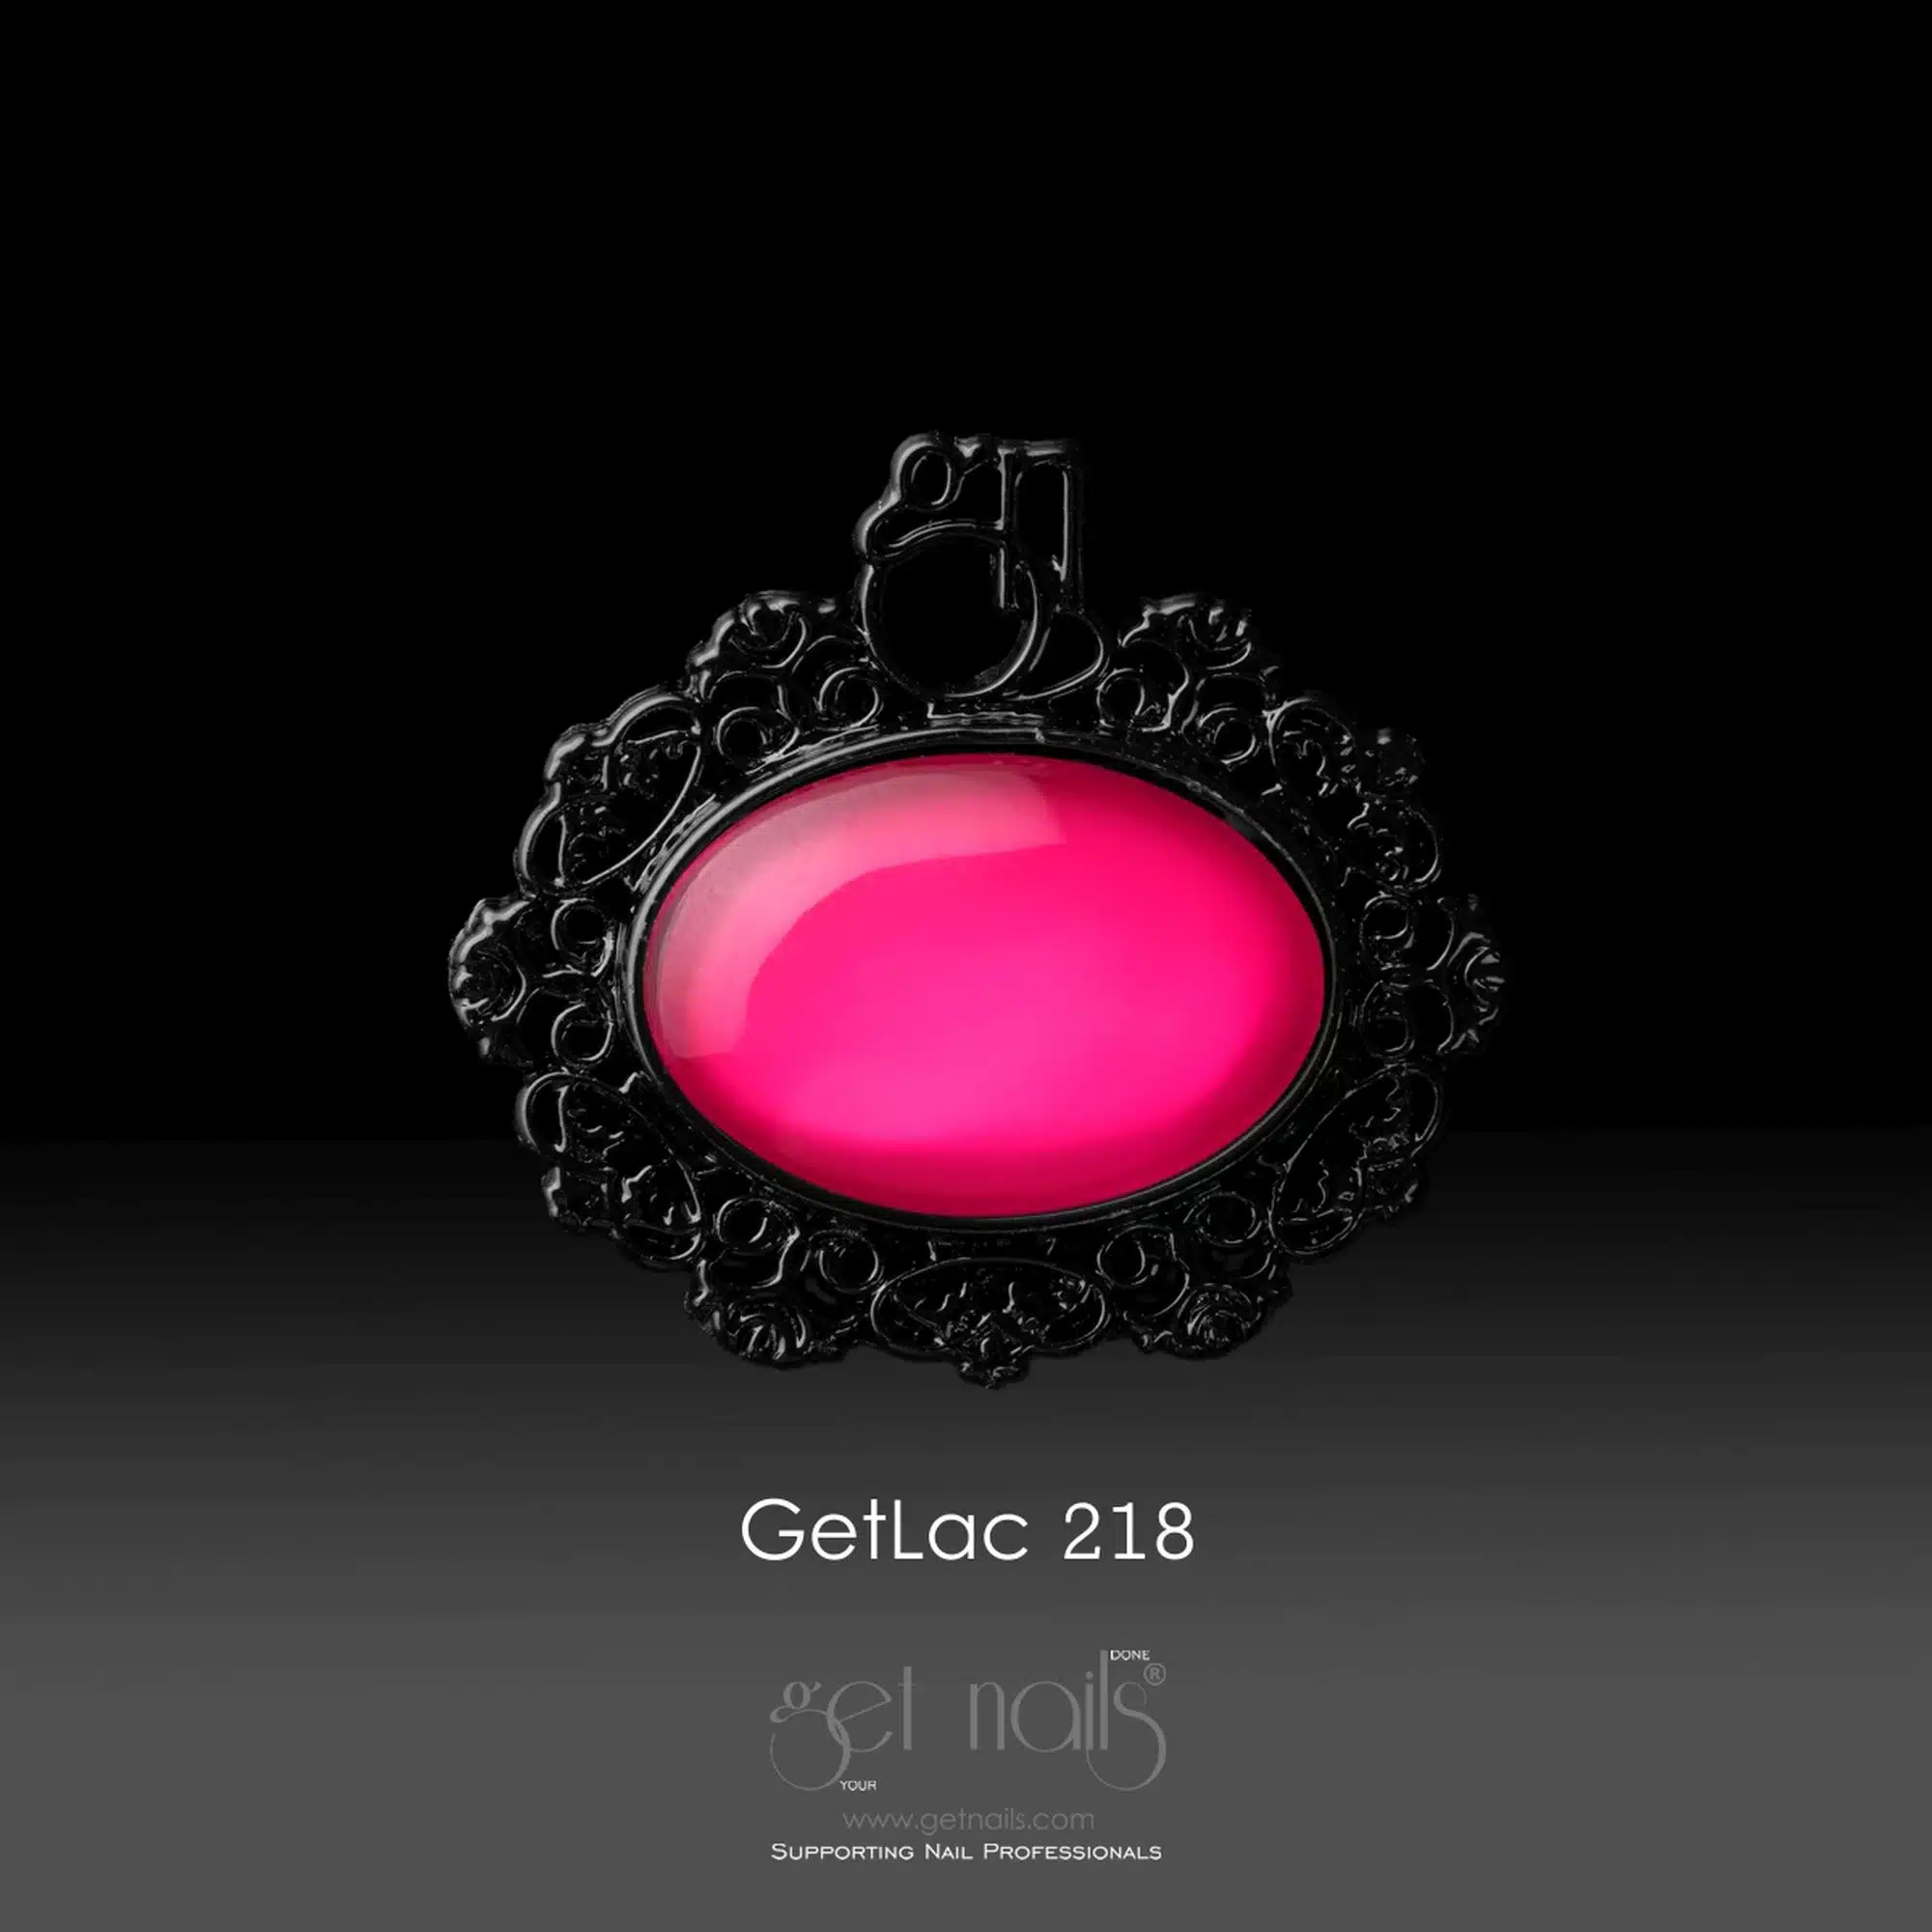 Get Nails Austria - GetLac 218 Неоновый Розовый 15г